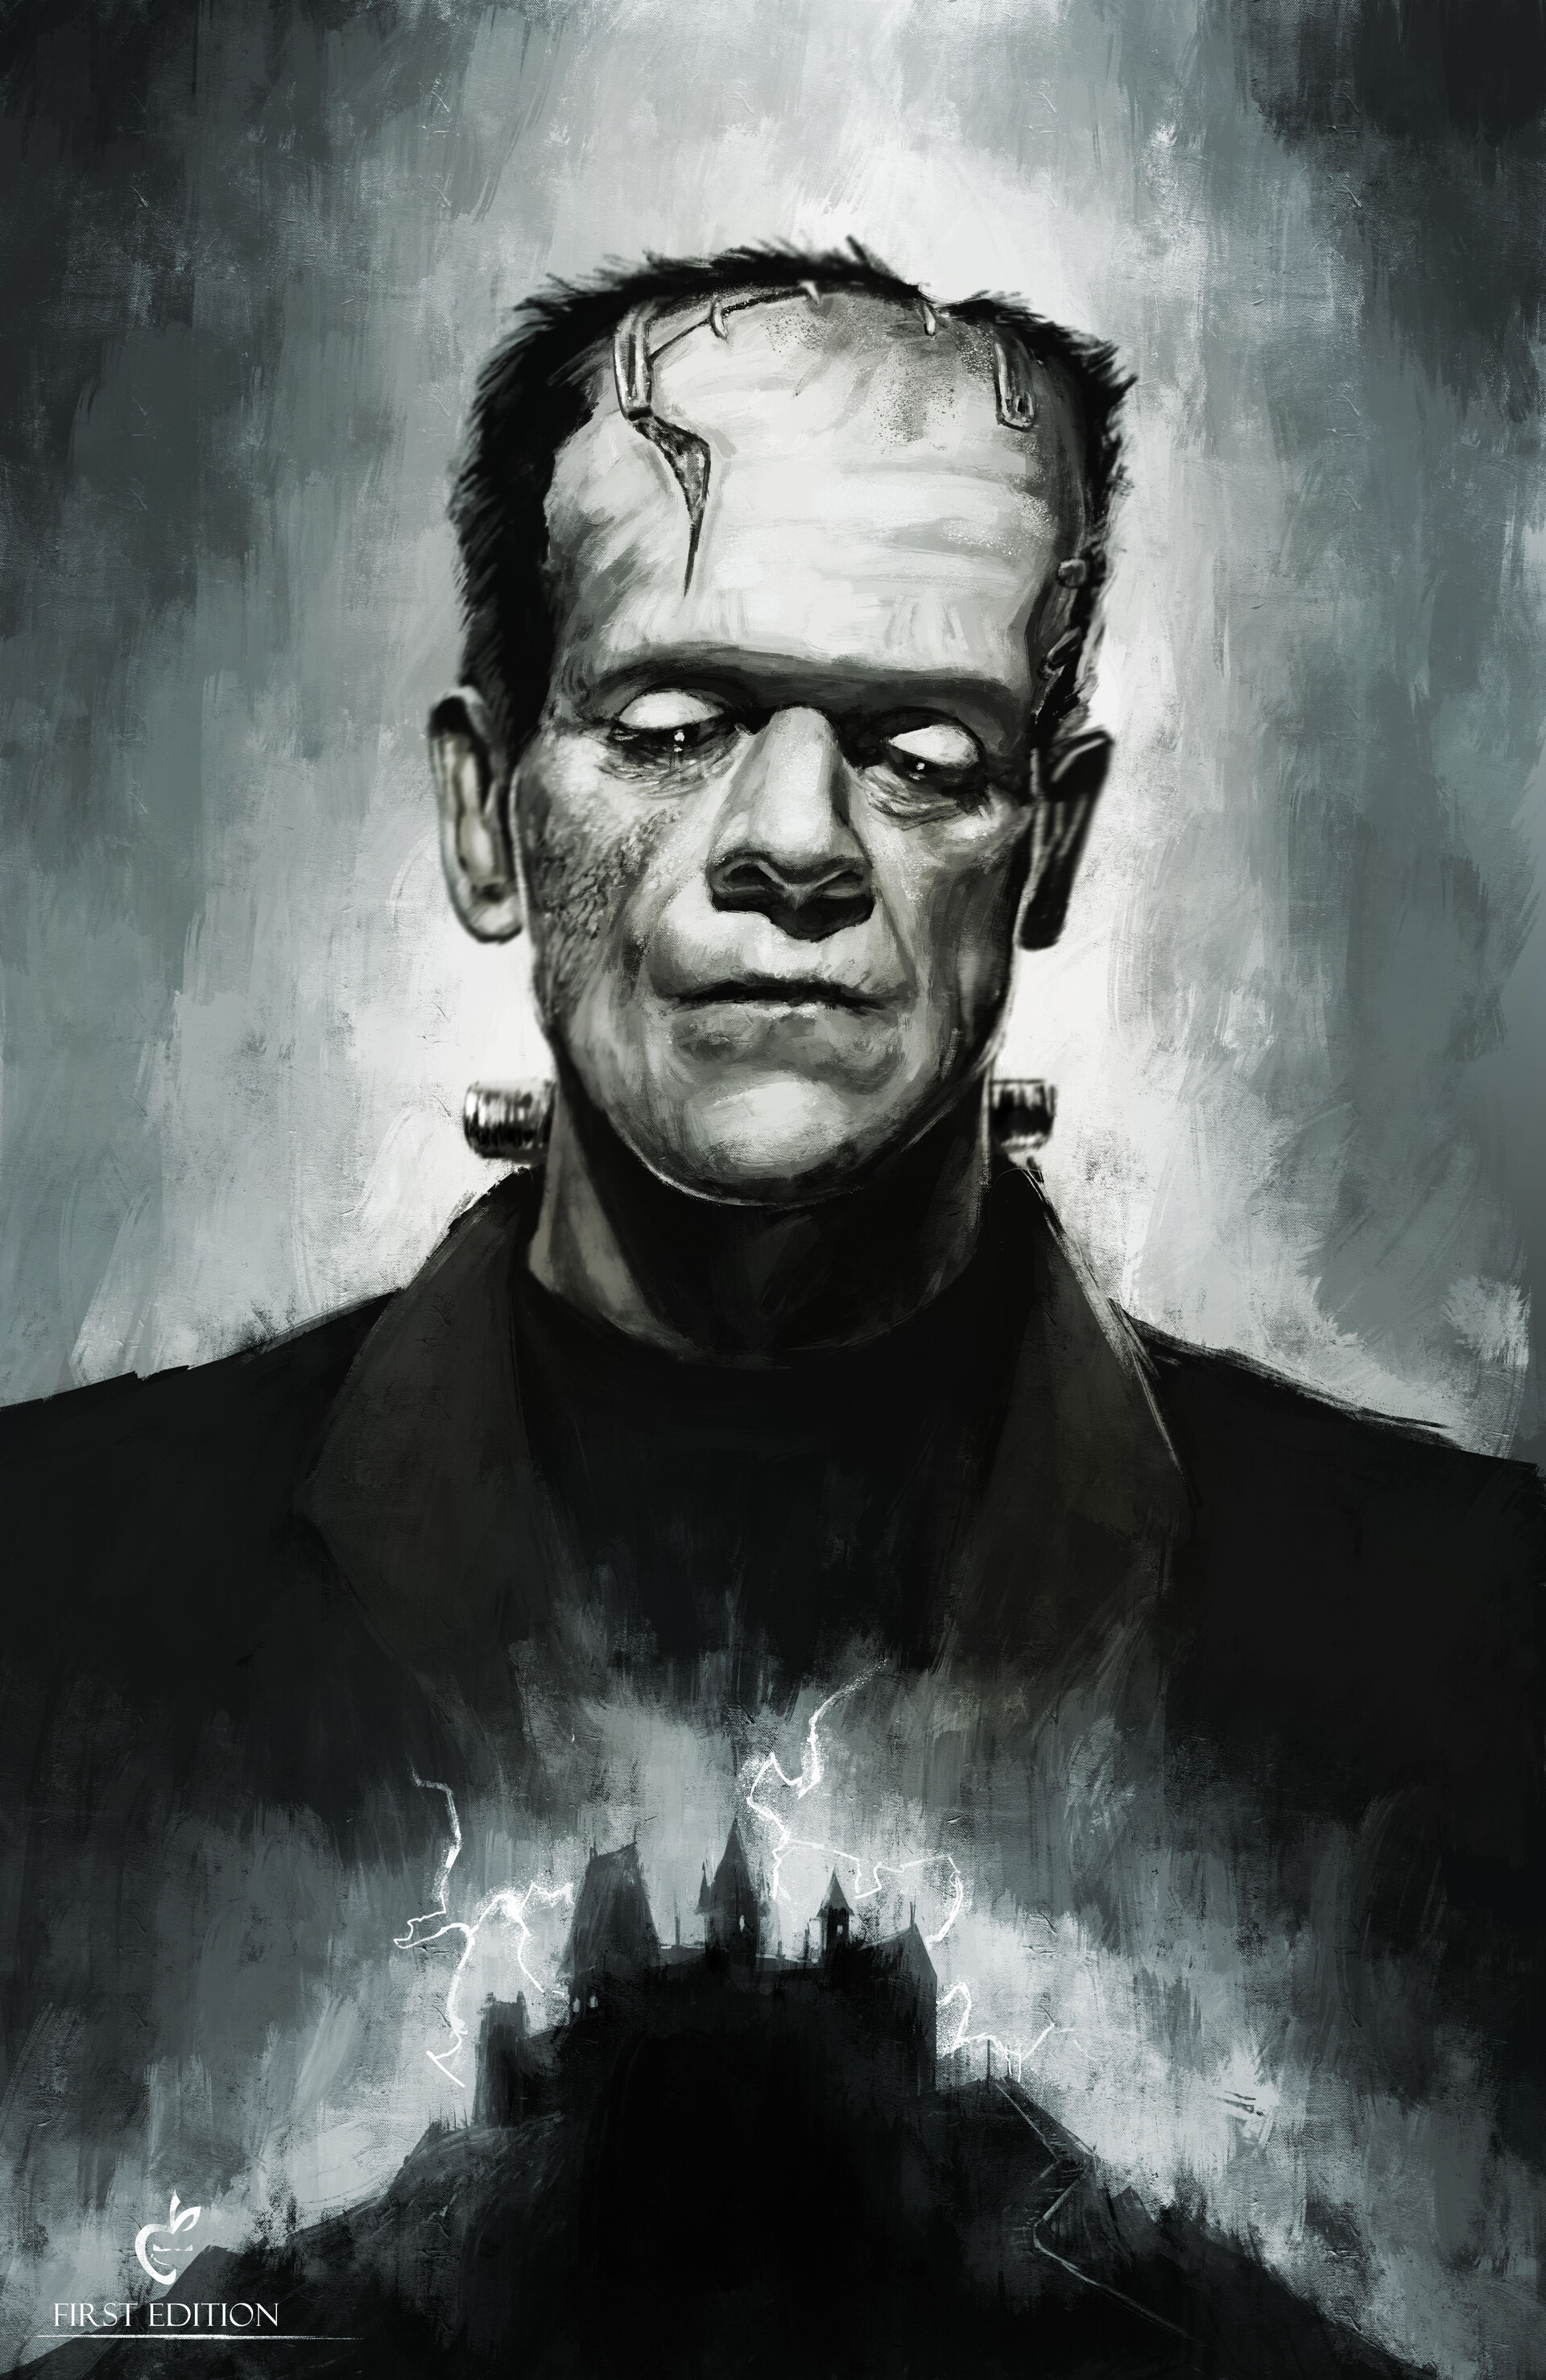 ArtStation - Frankenstein's monster